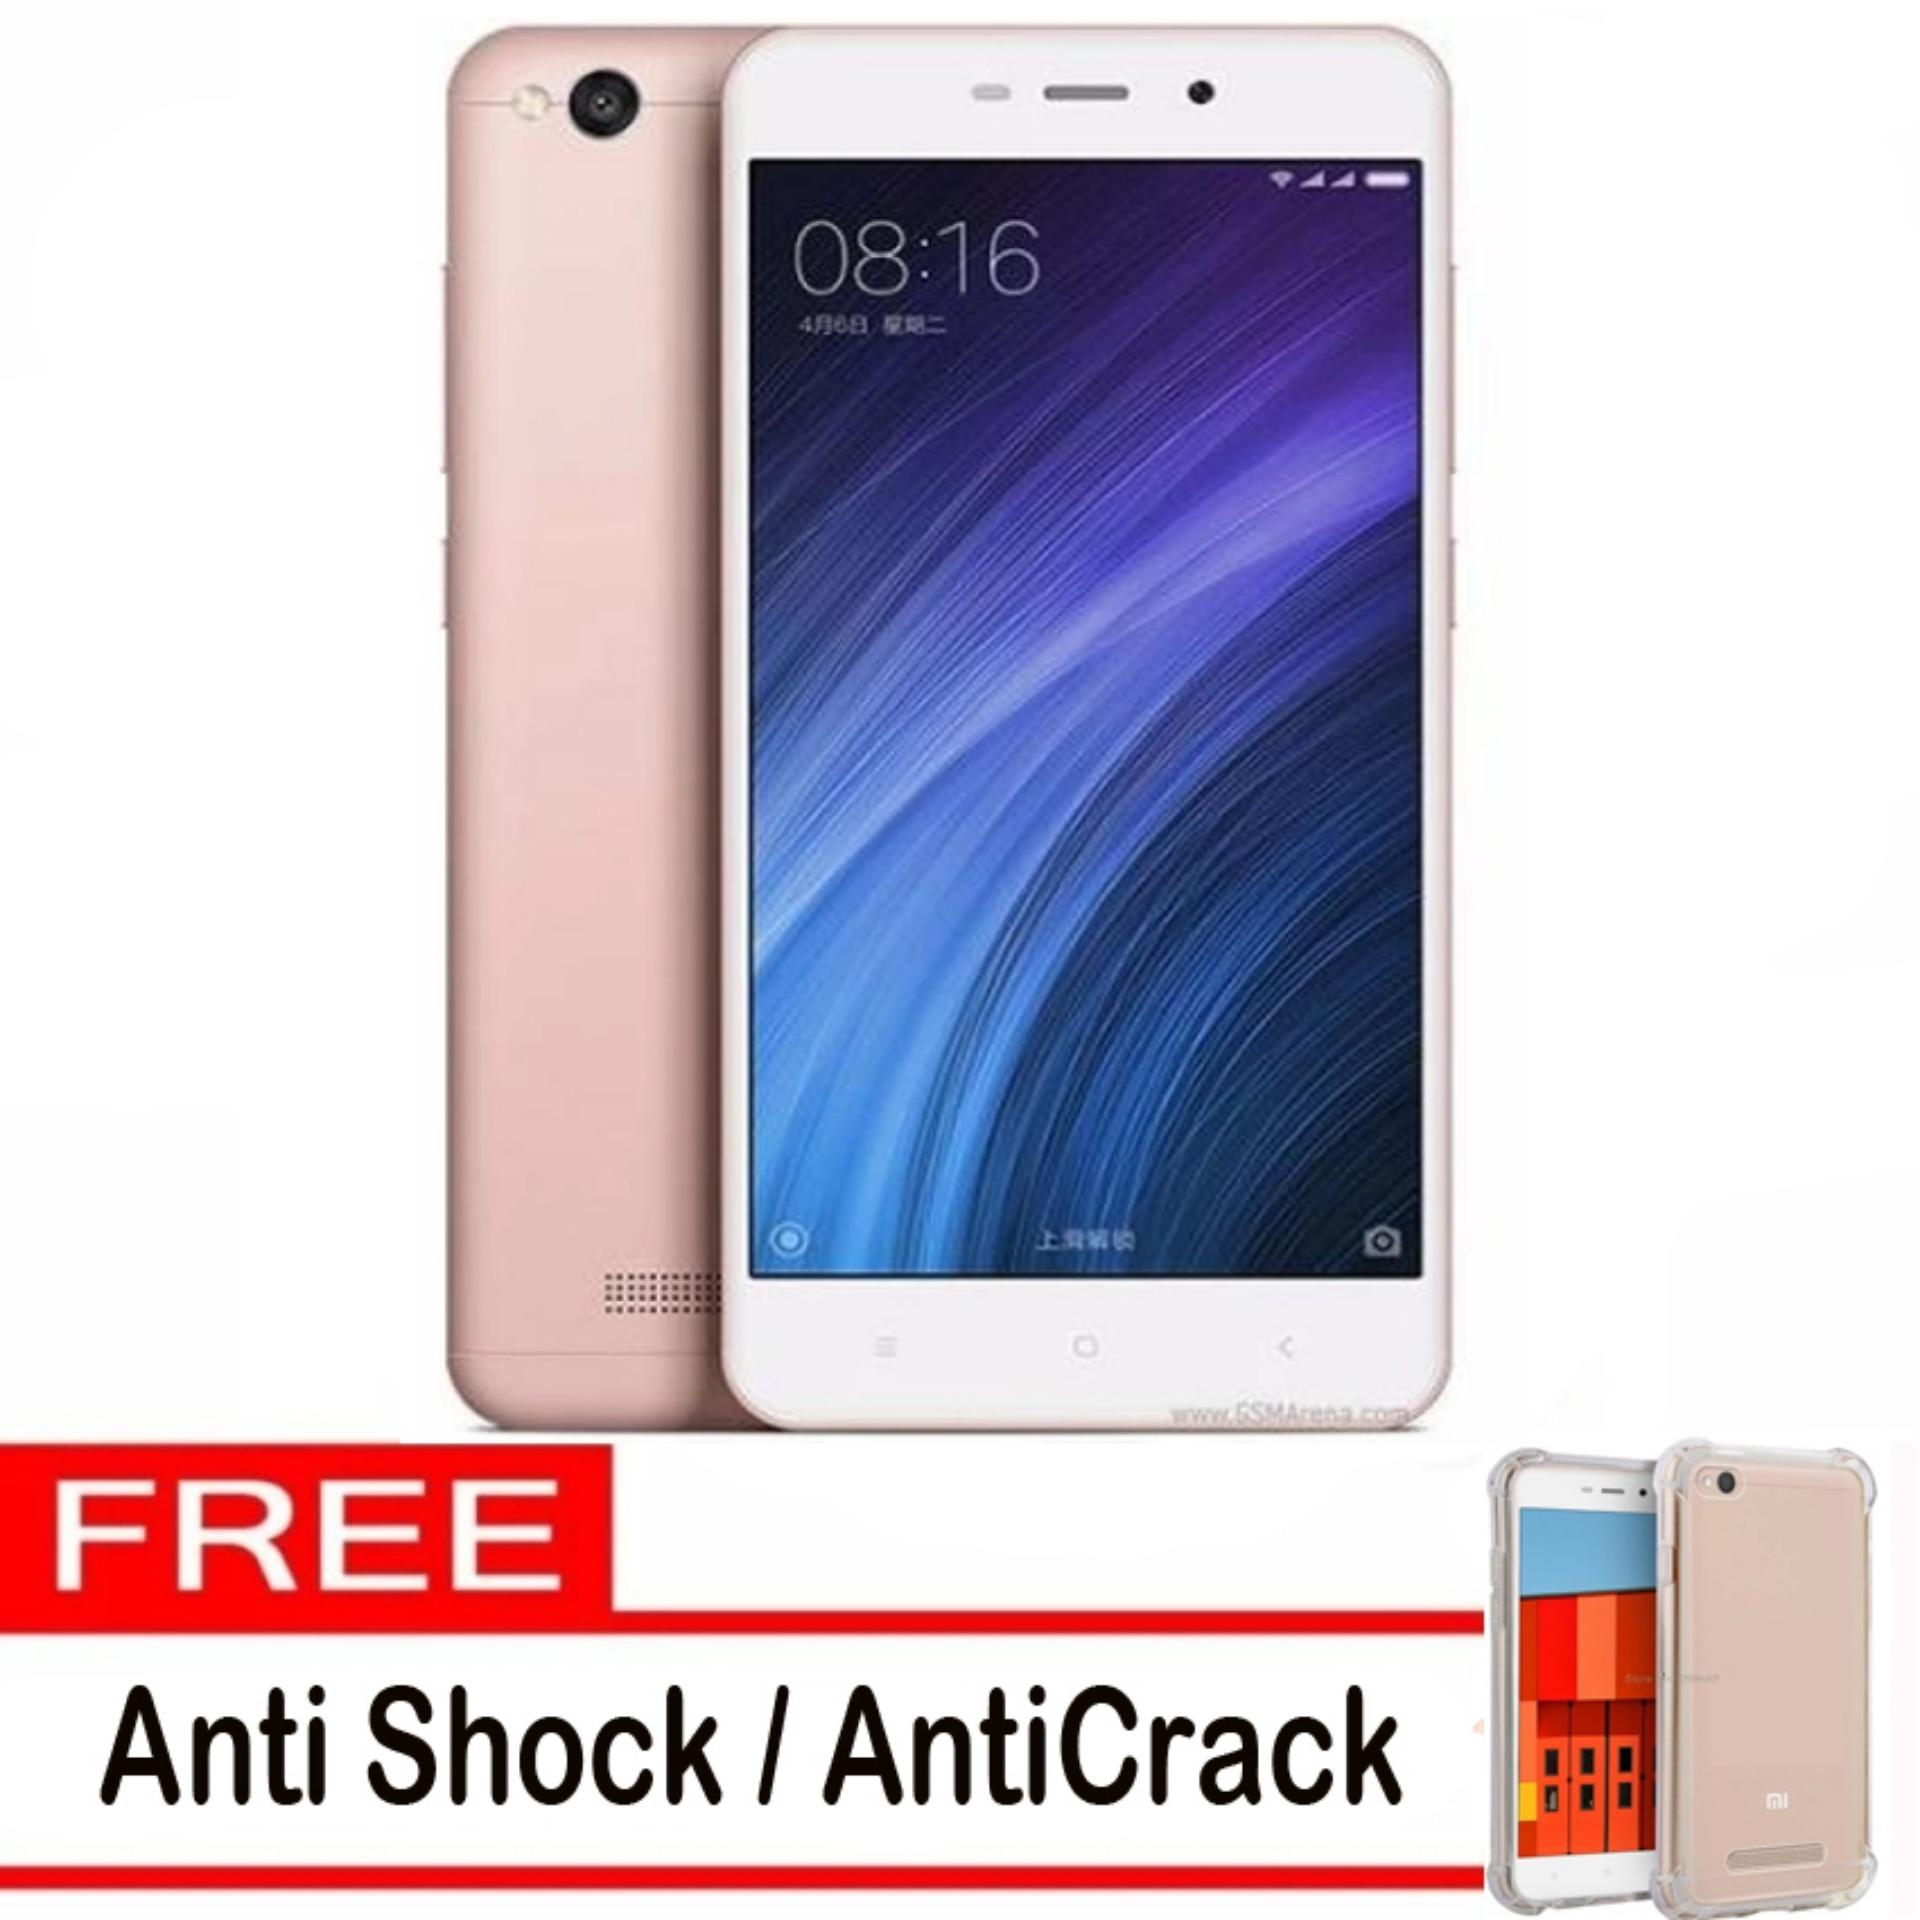 Xiaomi Redmi 4A - 16GB - Rose Gold (Ready Bhs Indonesia & 4G) + Gratis Anti Crack / Anti Shock